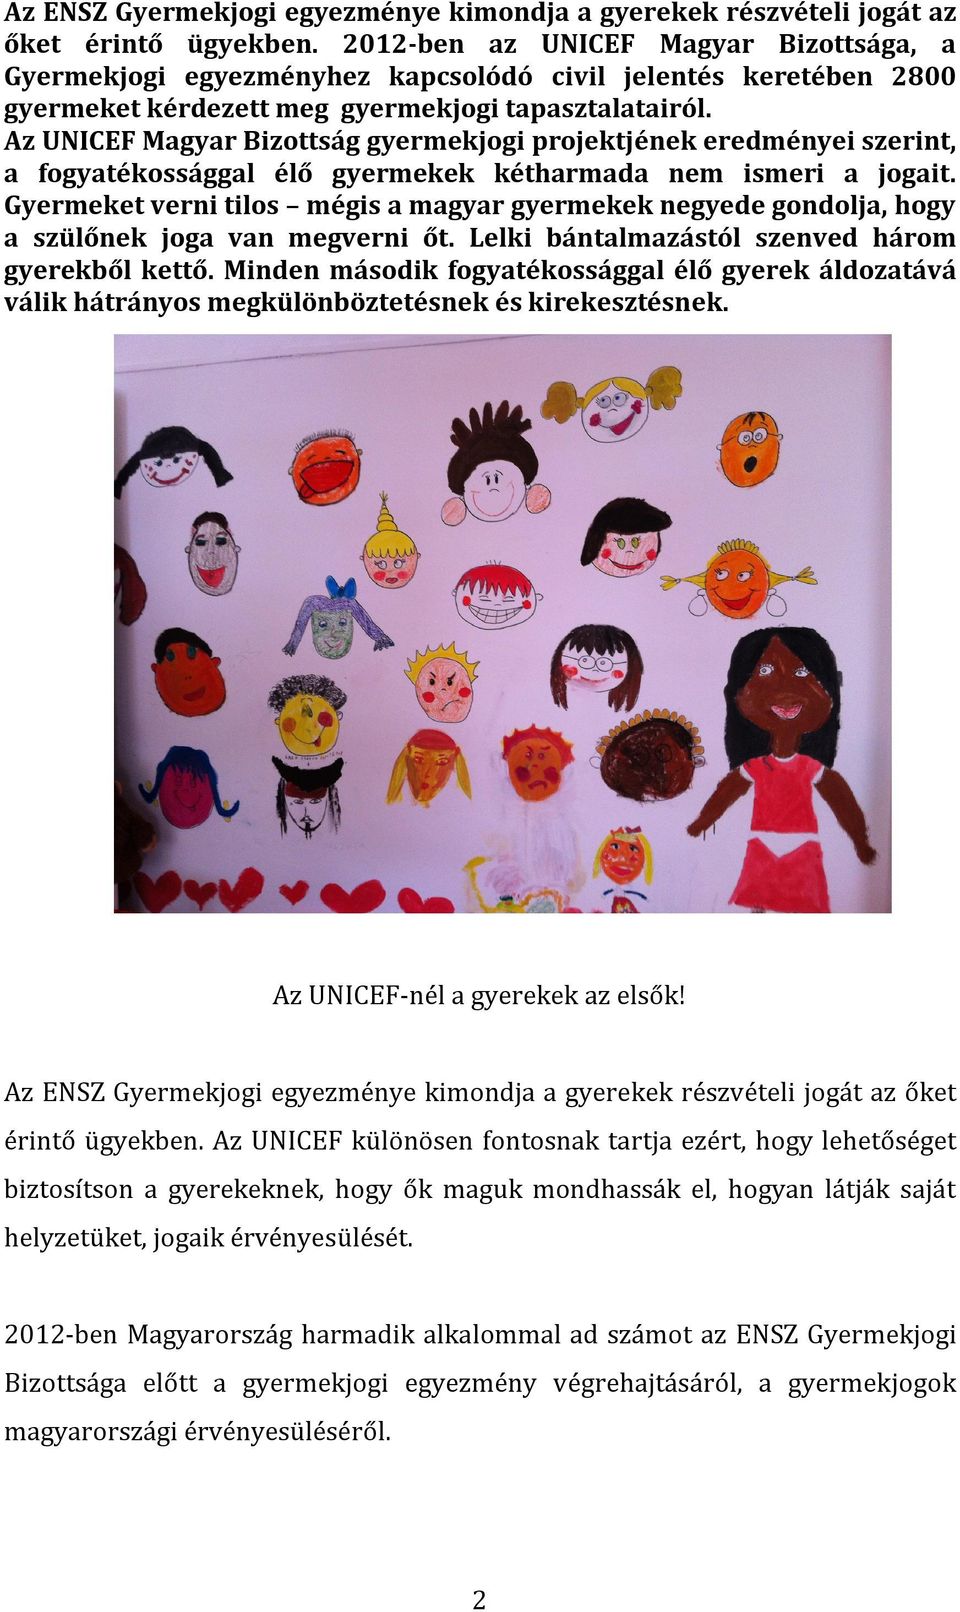 Az UNICEF Magyar Bizottság gyermekjogi projektjének eredményei szerint, a fogyatékossággal élő gyermekek kétharmada nem ismeri a jogait.